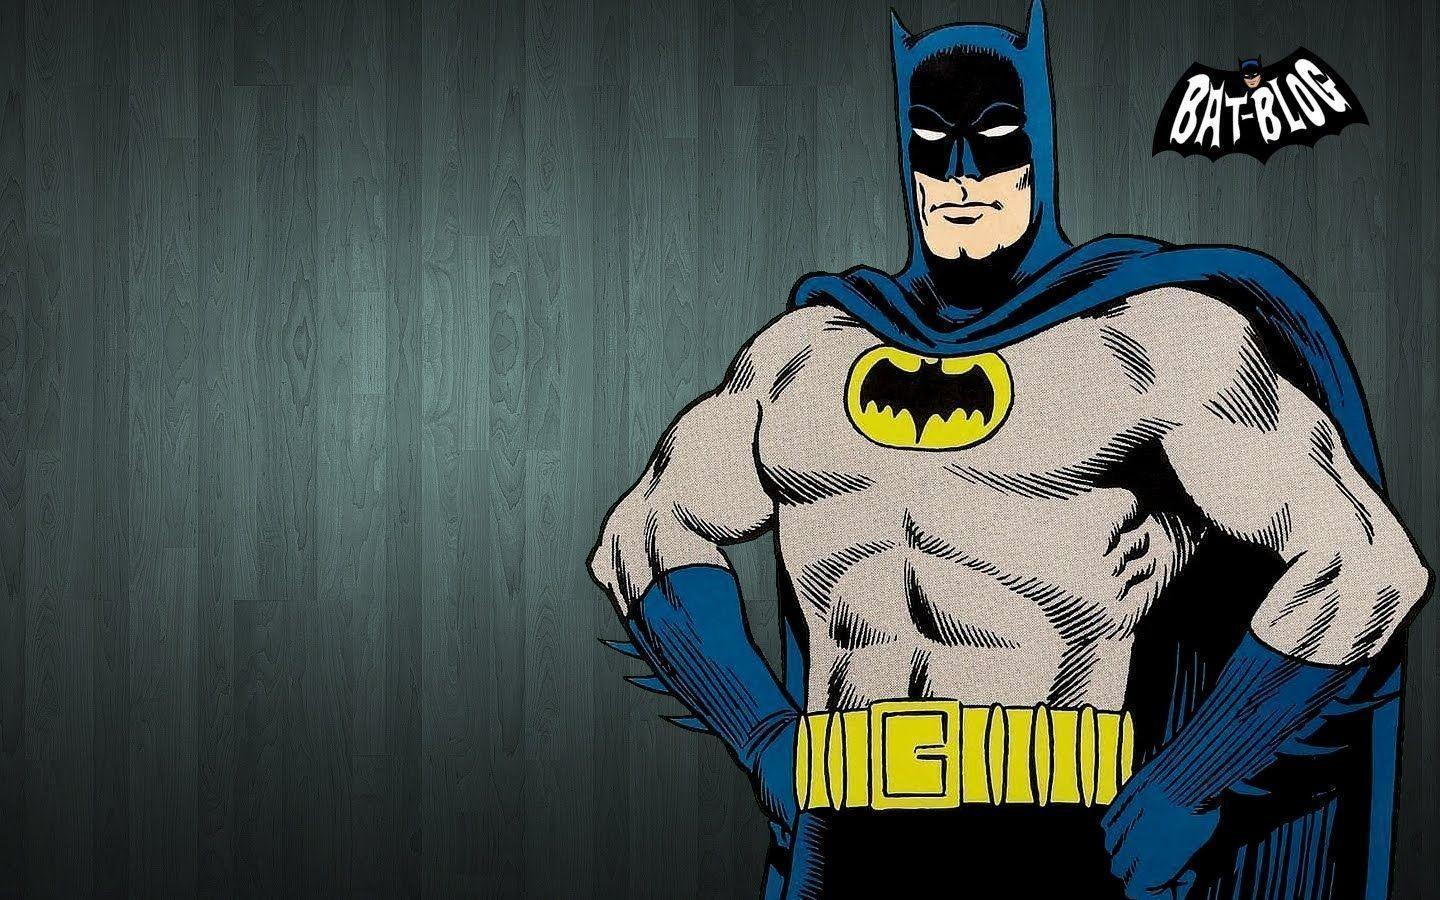 Image For > Comic Book Batman Wallpapers